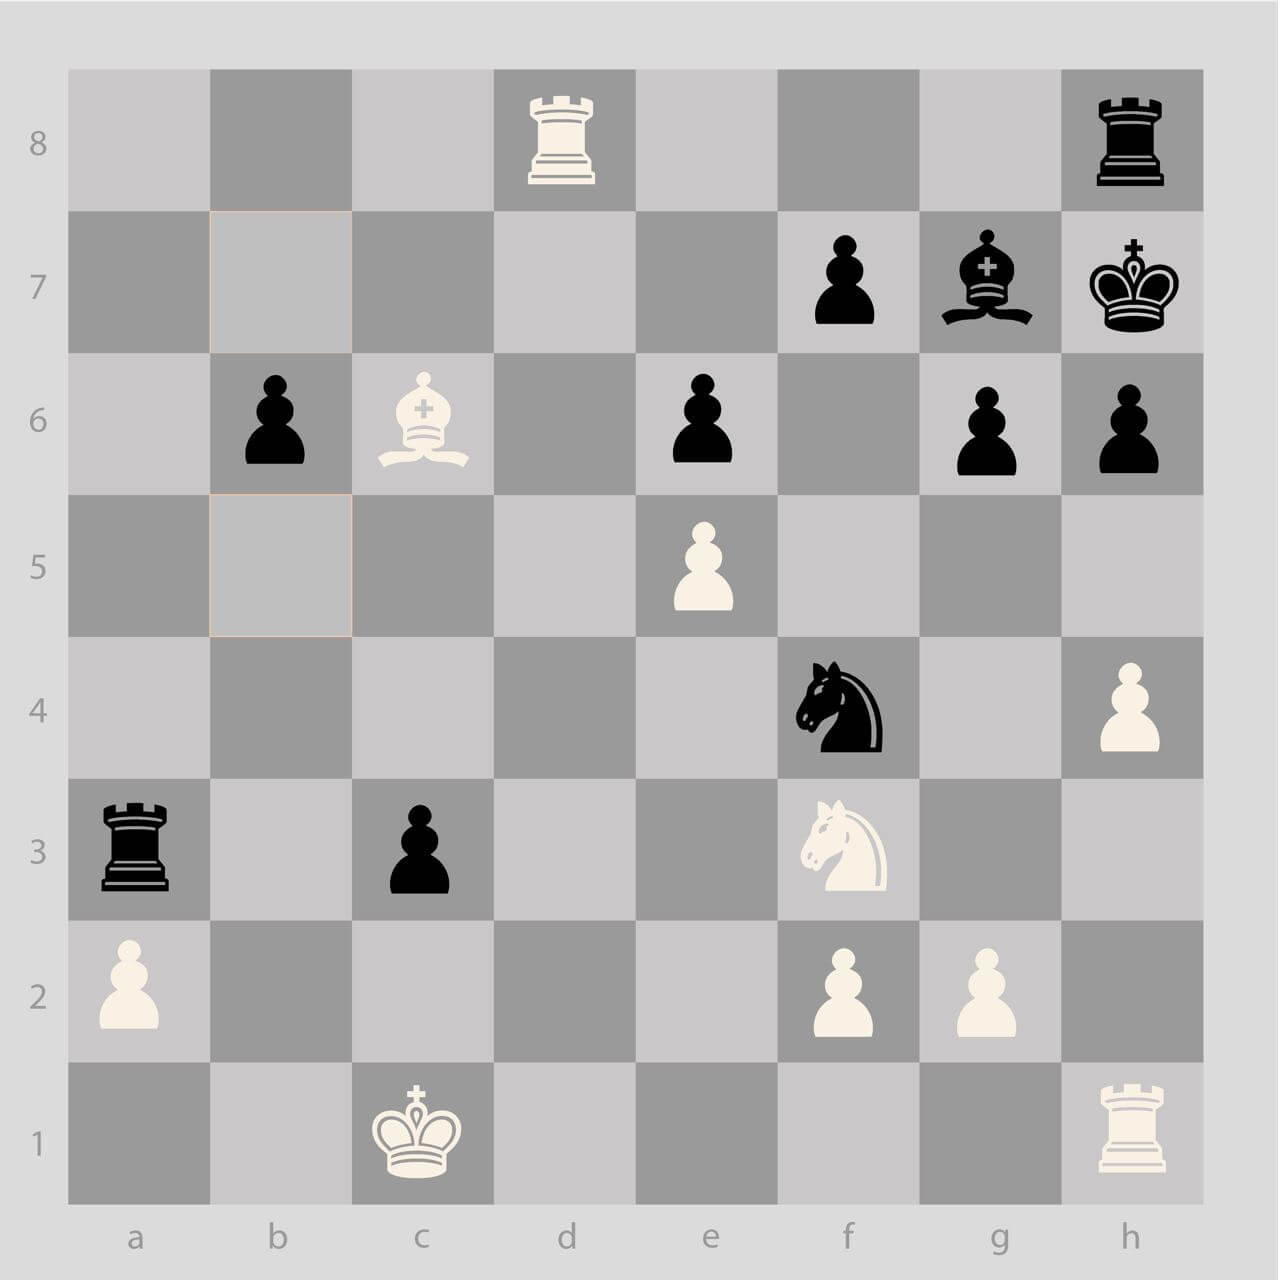 En Passant - Chess Terms 